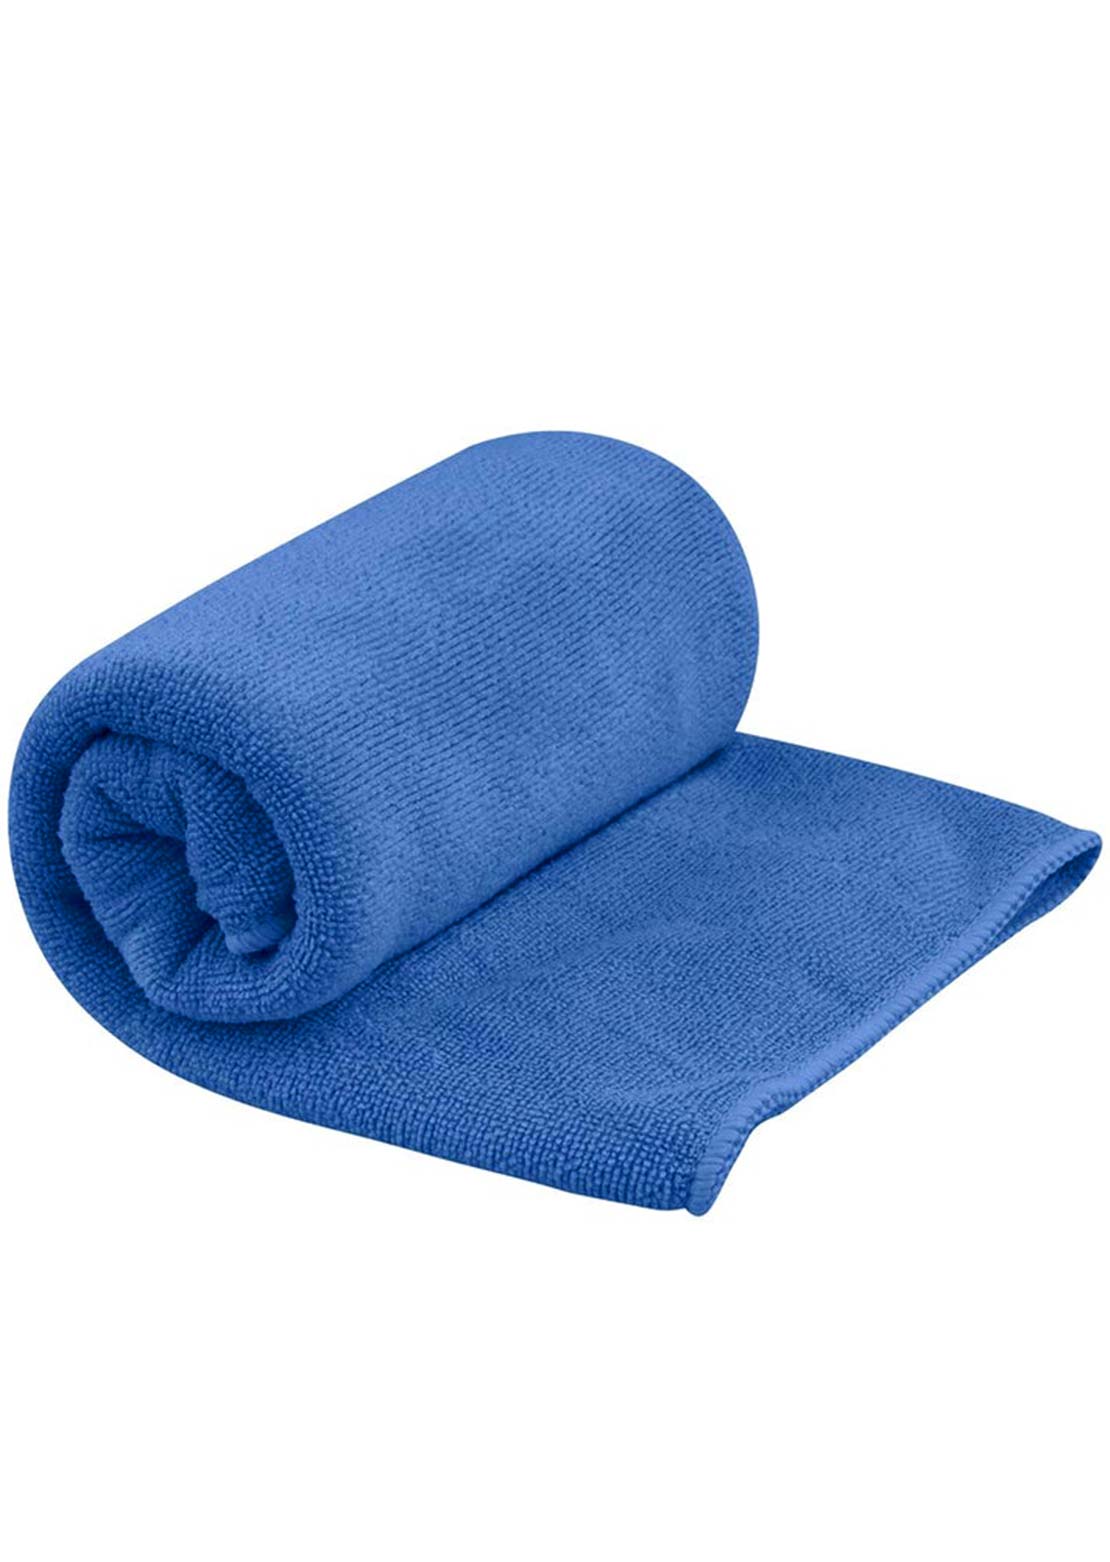 Sea To Summit Tek Towel - 34 x 60 Pacific Blue